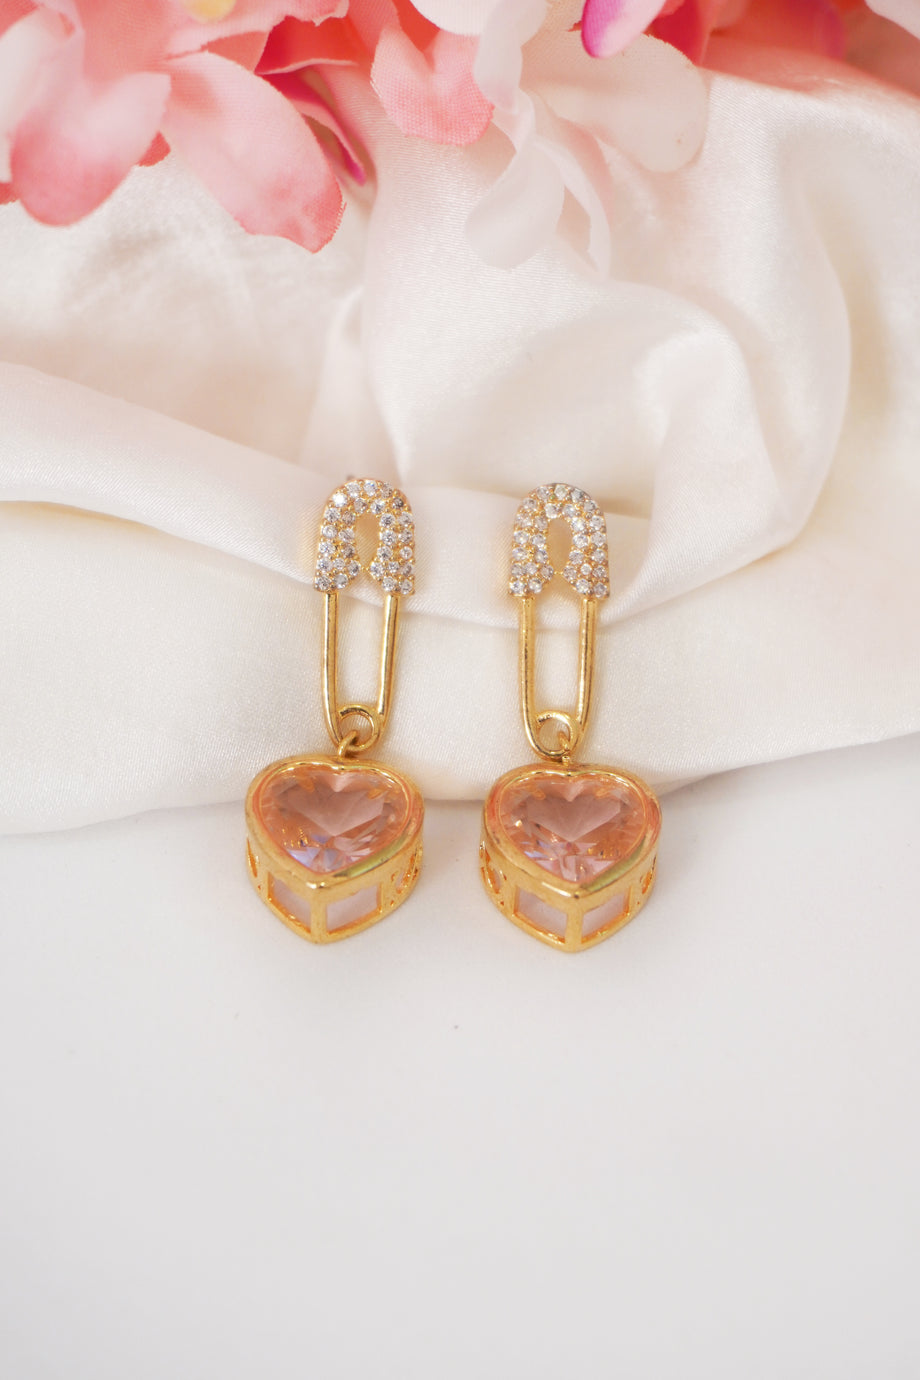 Aanandita Golden Imperial Heart Touching Earring – Aanandita Creations